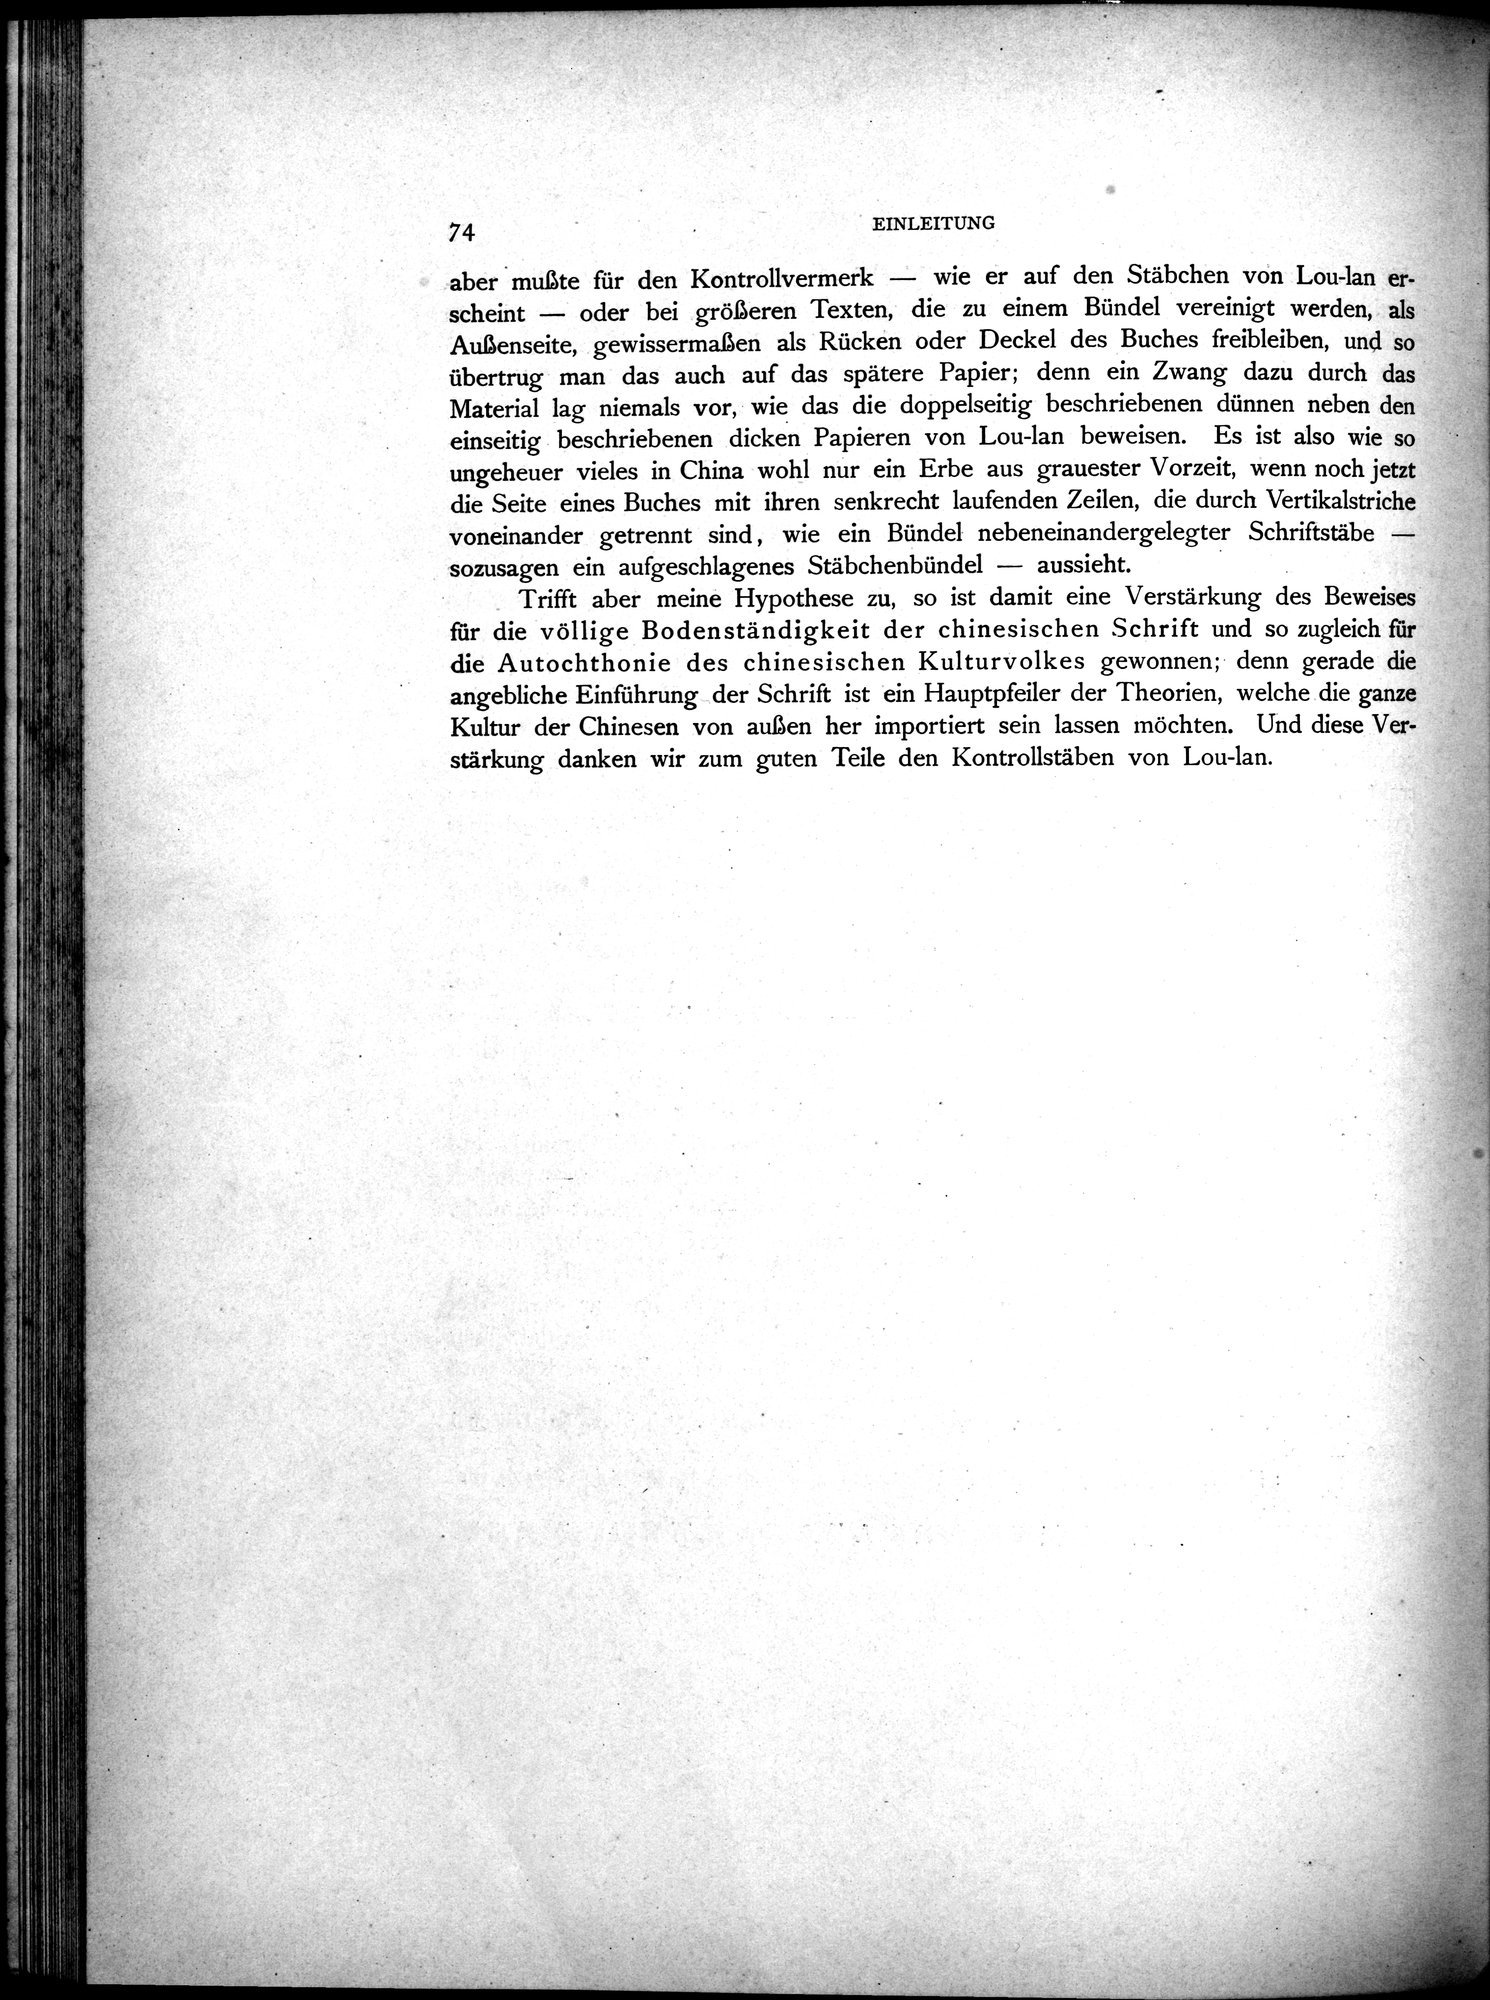 Die Chinesischen Handschriften- und sonstigen Kleinfunde Sven Hedins in Lou-lan : vol.1 / Page 98 (Grayscale High Resolution Image)